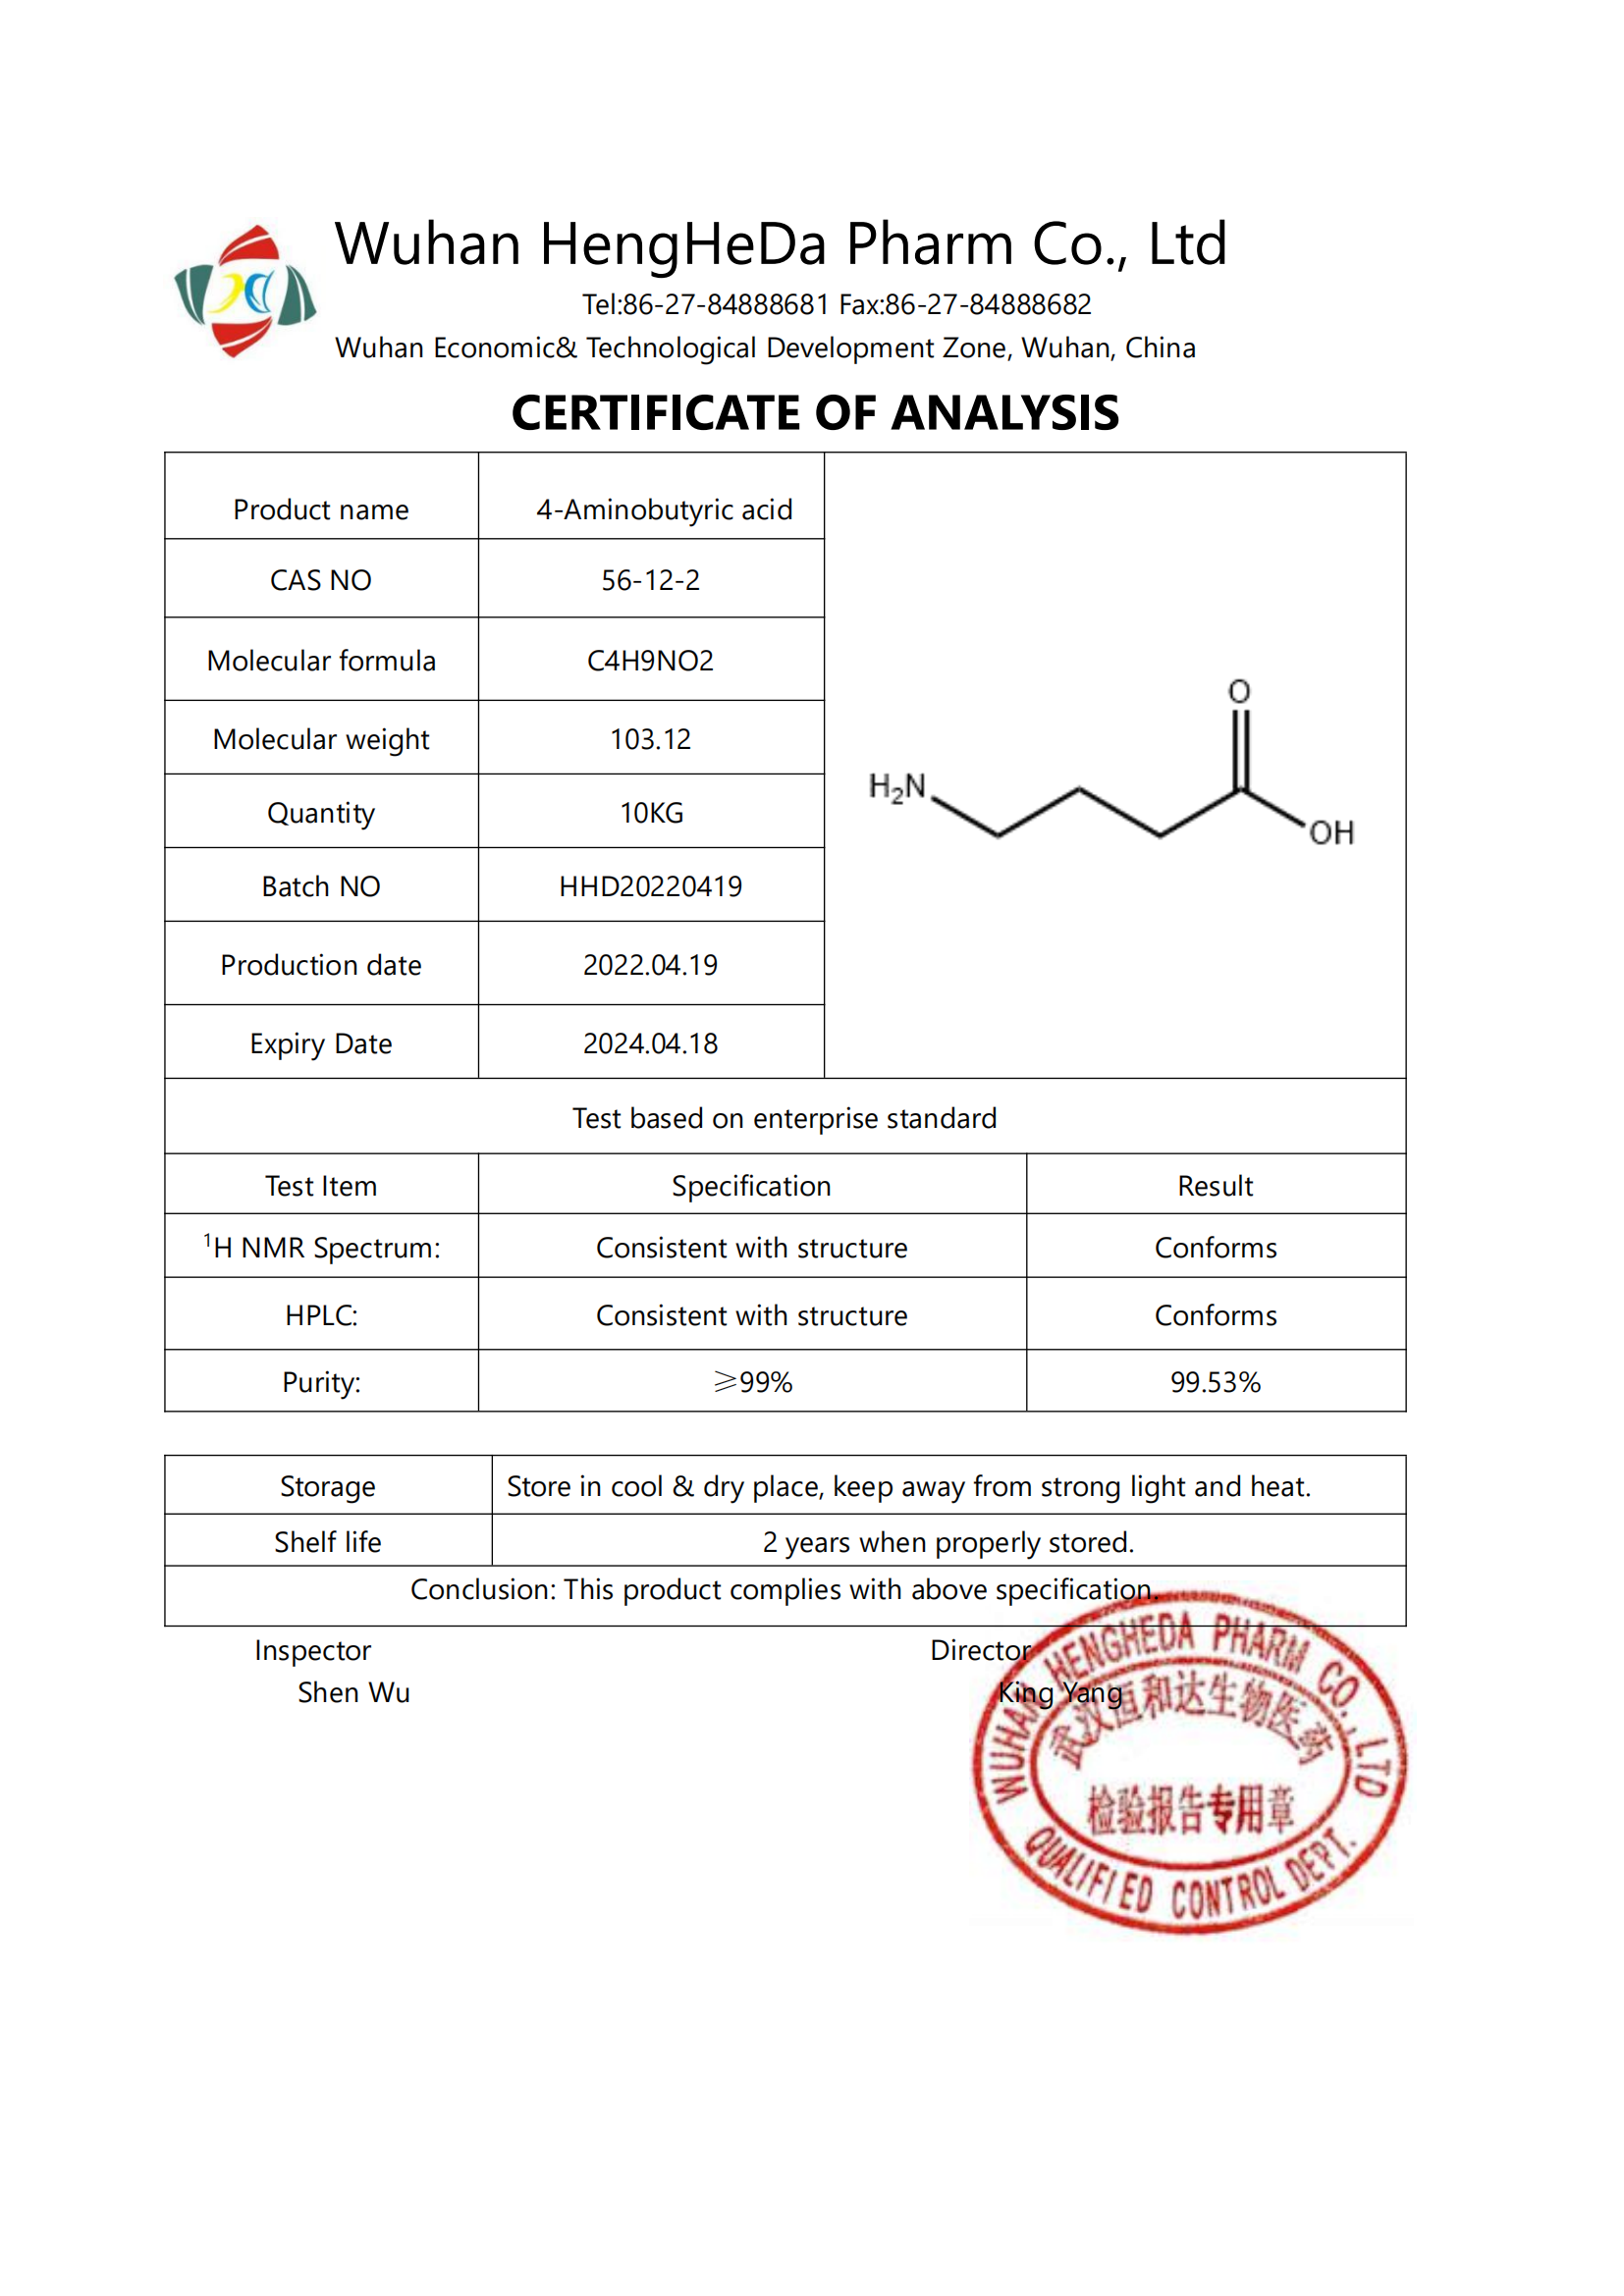 Acheter Acide 4-aminobutyrique de haute qualité CAS 56-12-2,Acide 4-aminobutyrique de haute qualité CAS 56-12-2 Prix,Acide 4-aminobutyrique de haute qualité CAS 56-12-2 Marques,Acide 4-aminobutyrique de haute qualité CAS 56-12-2 Fabricant,Acide 4-aminobutyrique de haute qualité CAS 56-12-2 Quotes,Acide 4-aminobutyrique de haute qualité CAS 56-12-2 Société,